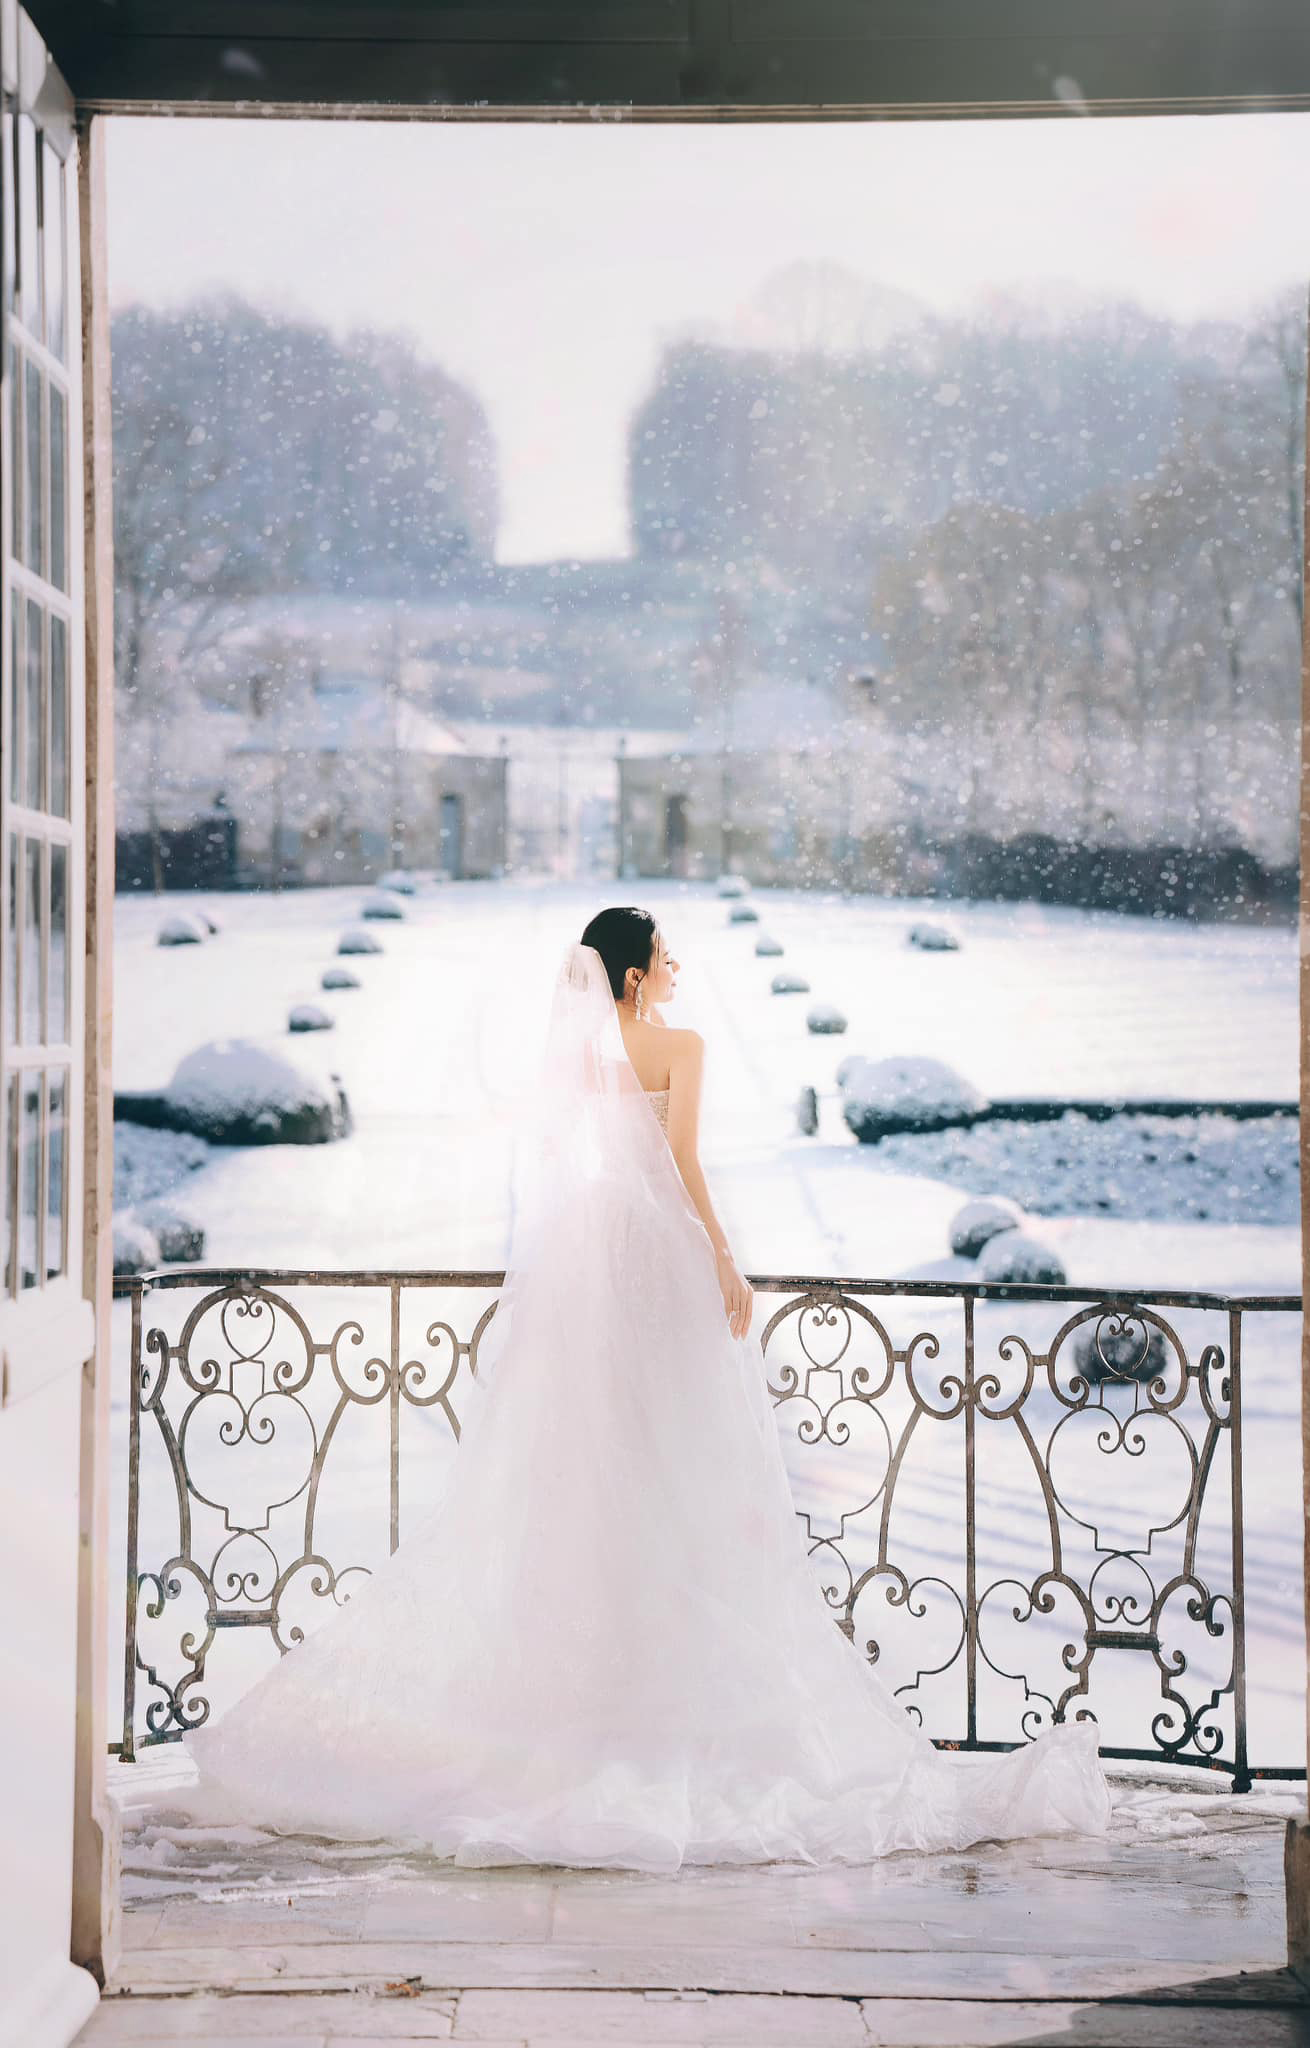 Ảnh cưới của Midu chụp tại lâu đài Pháp vào 1 ngày tuyết rơi cực lãng mạn.